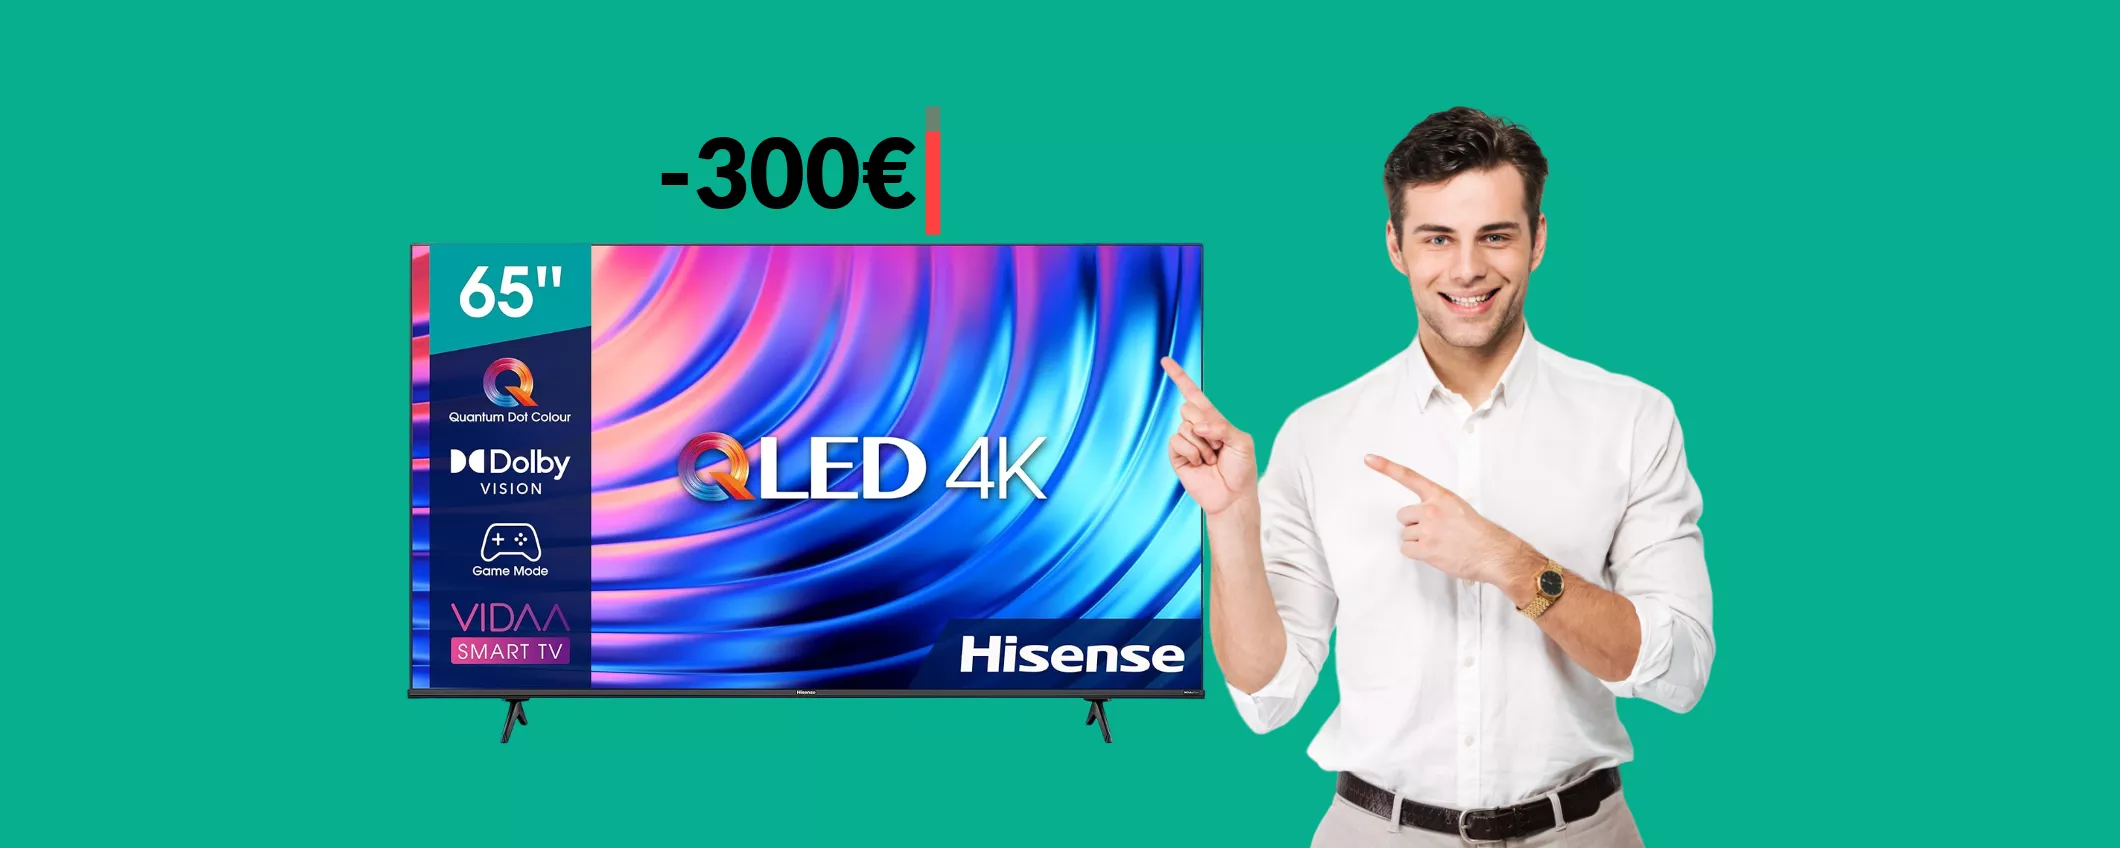 Smart TV 4K Hisense 65'': una BESTIA a prezzo scontatissimo